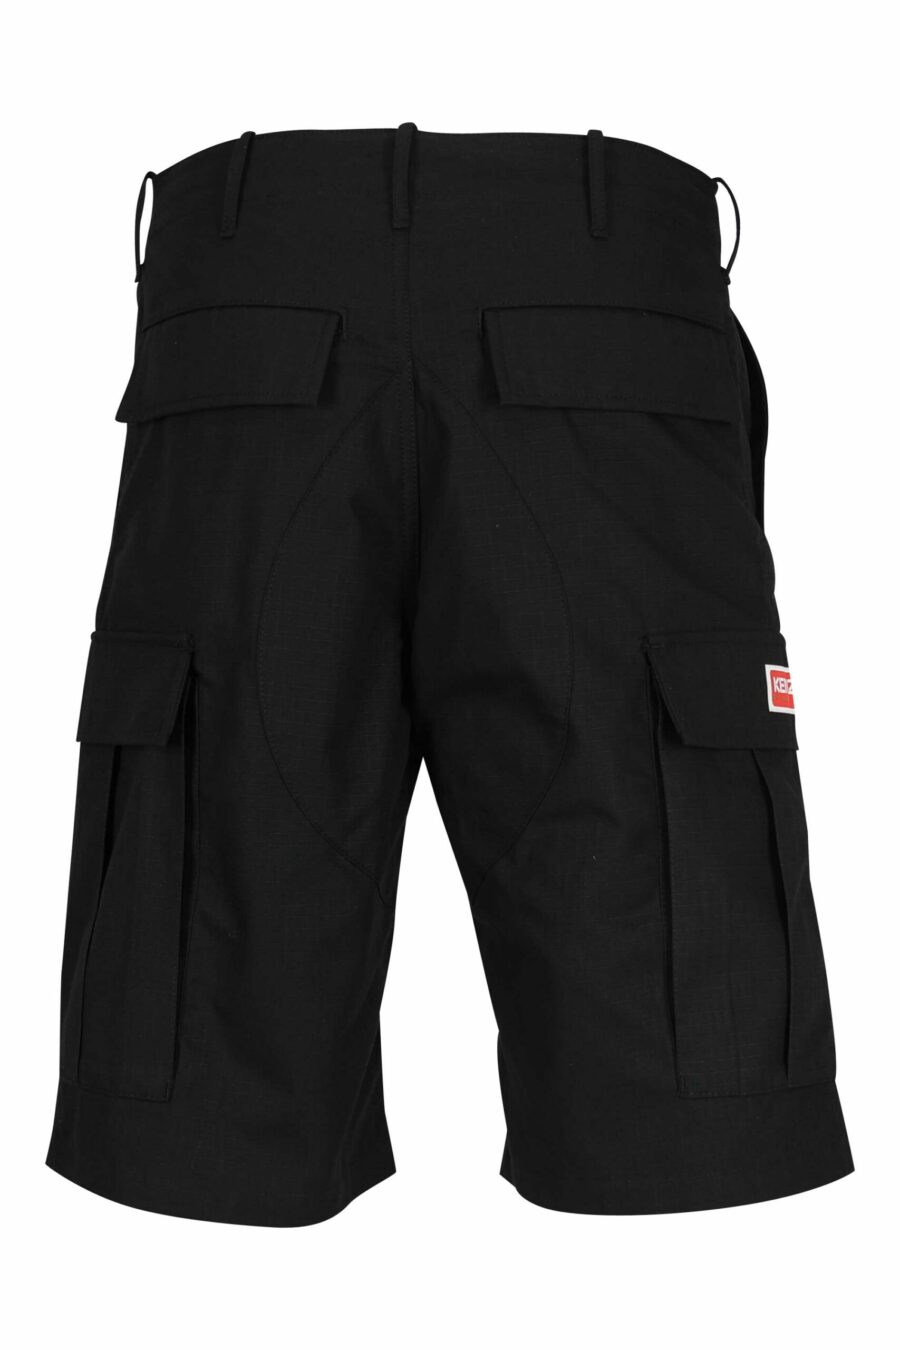 Pantalón negro corto estilo cargo con logo "boke flower" - 3612230618985 2 scaled